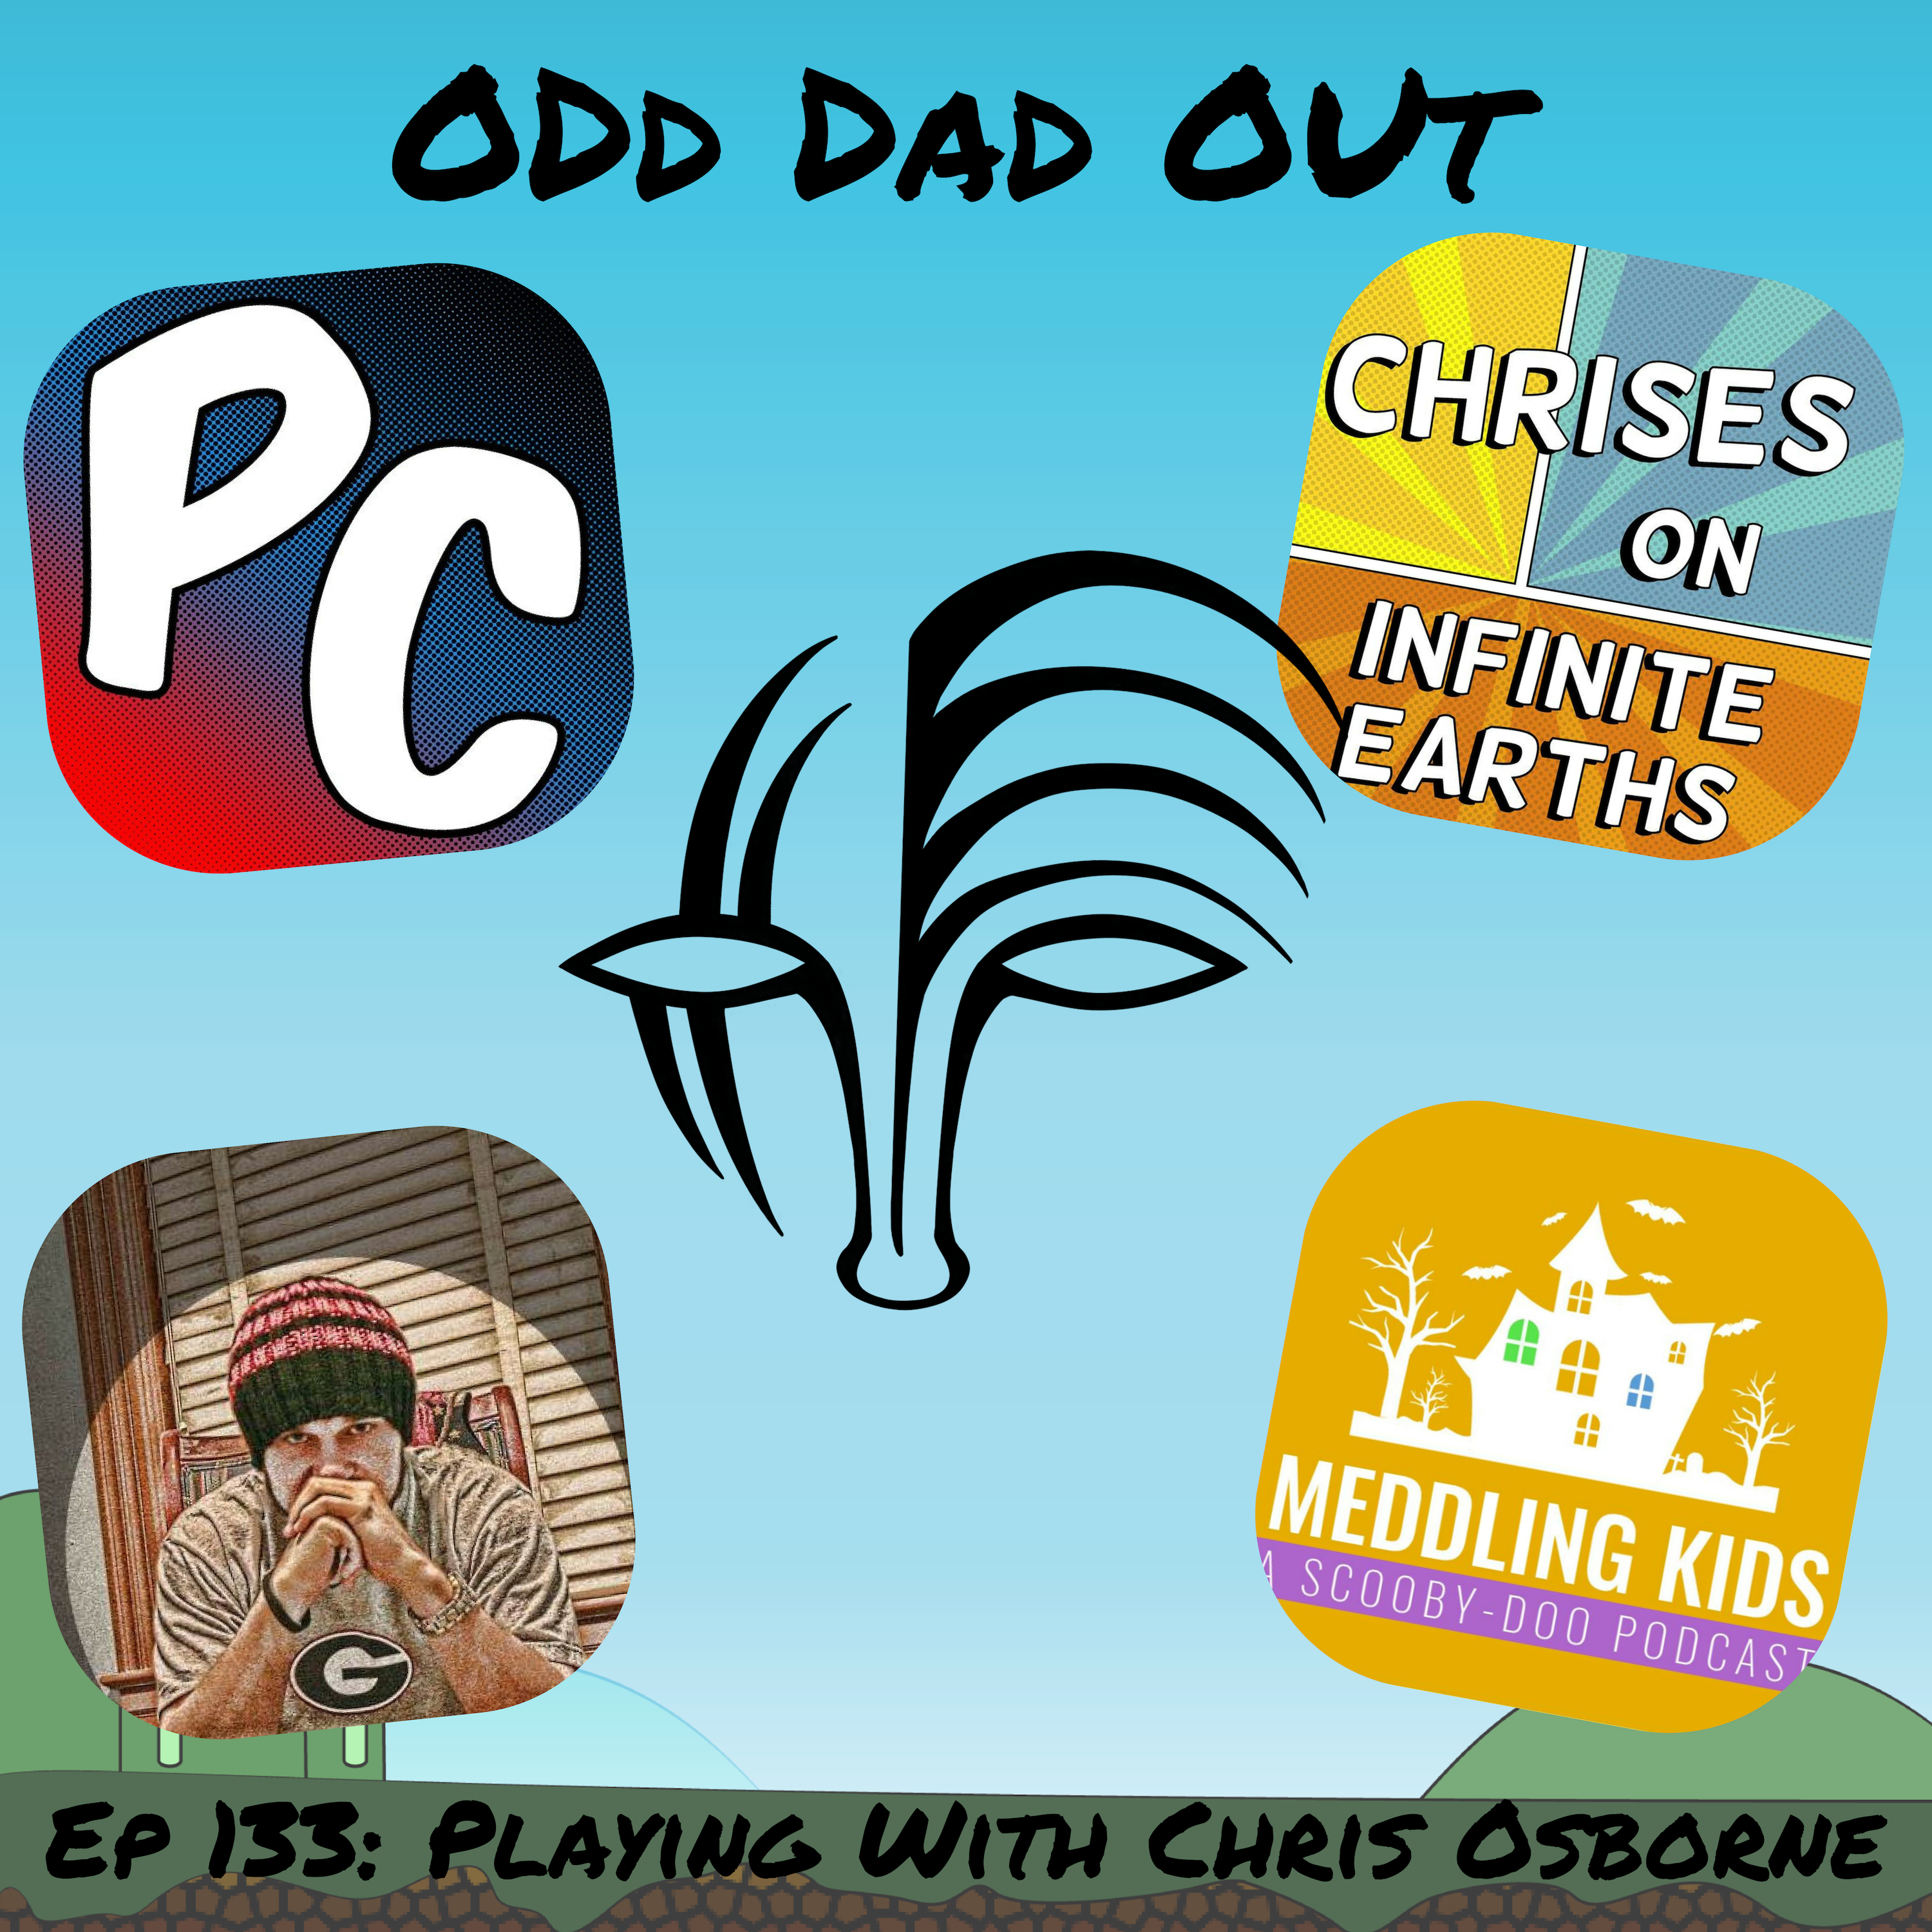 Playing with Chris Osborne: ODO 133